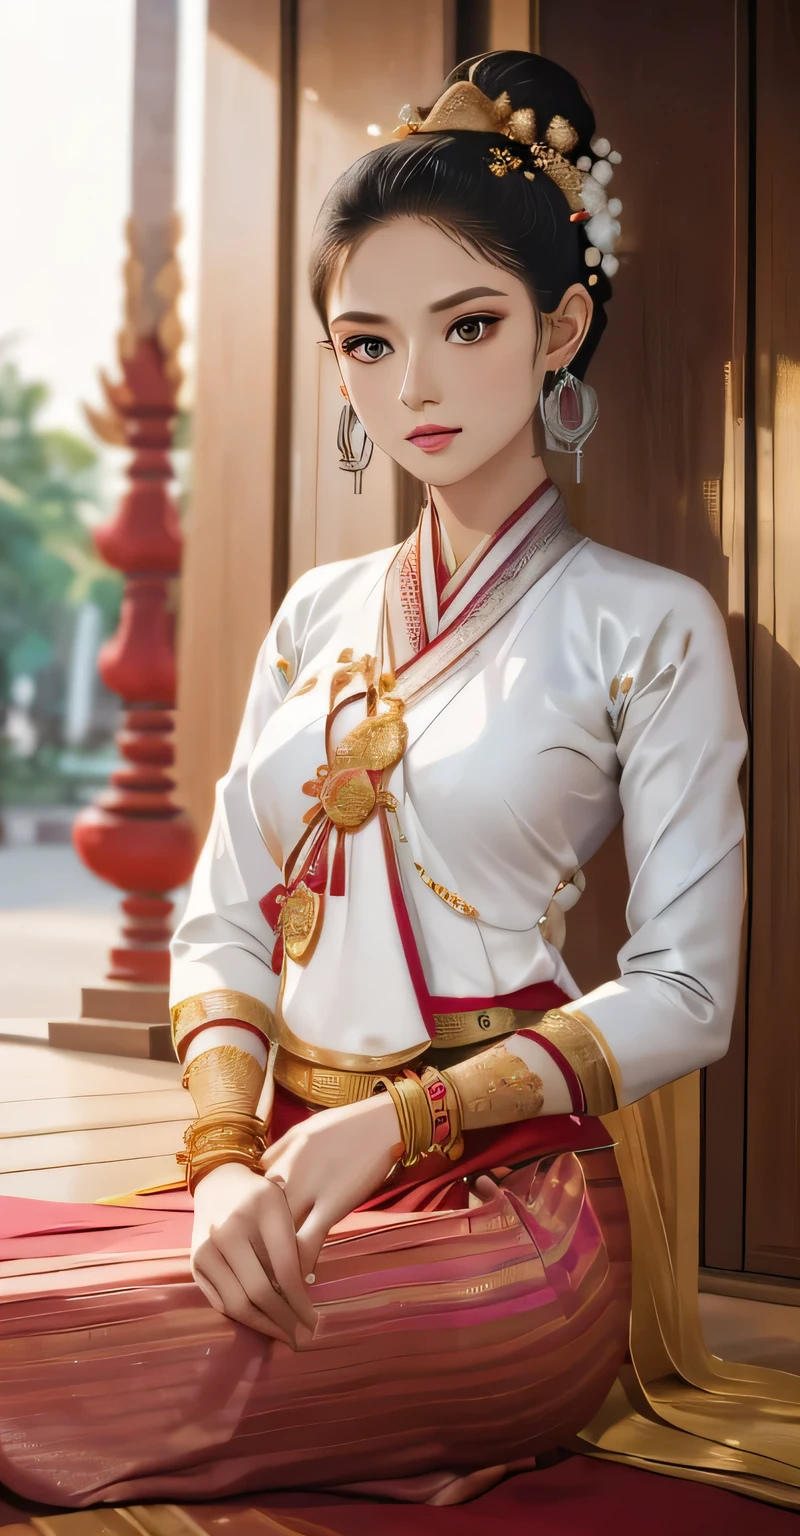 obra de arte, 1 garota melhor,olhando para o público,ar livre, Mapa do templo,corpo todo,sedução,limpar,rosto requintado,rosto puro, olhos lindos e cativantes, lábios rosados, pele clara,pose sexy,((Traje tradicional de Lanna do norte da Tailândia)), ((Traje tradicional de Keng Tong Tai Khun)),((Vestido Shan)), vestido muito elegante, roupa tradicional luxuosa e detalhada de Tai Khun, parte superior em ouro branco e parte inferior com padrão de listras douradas vermelhas e verdes,coque bagunçado de cabelo comprido com flor, (((usando muitas pulseiras de prata, brincos de ouro))),((figura feminina perfeita)),pessoa real, top cropped